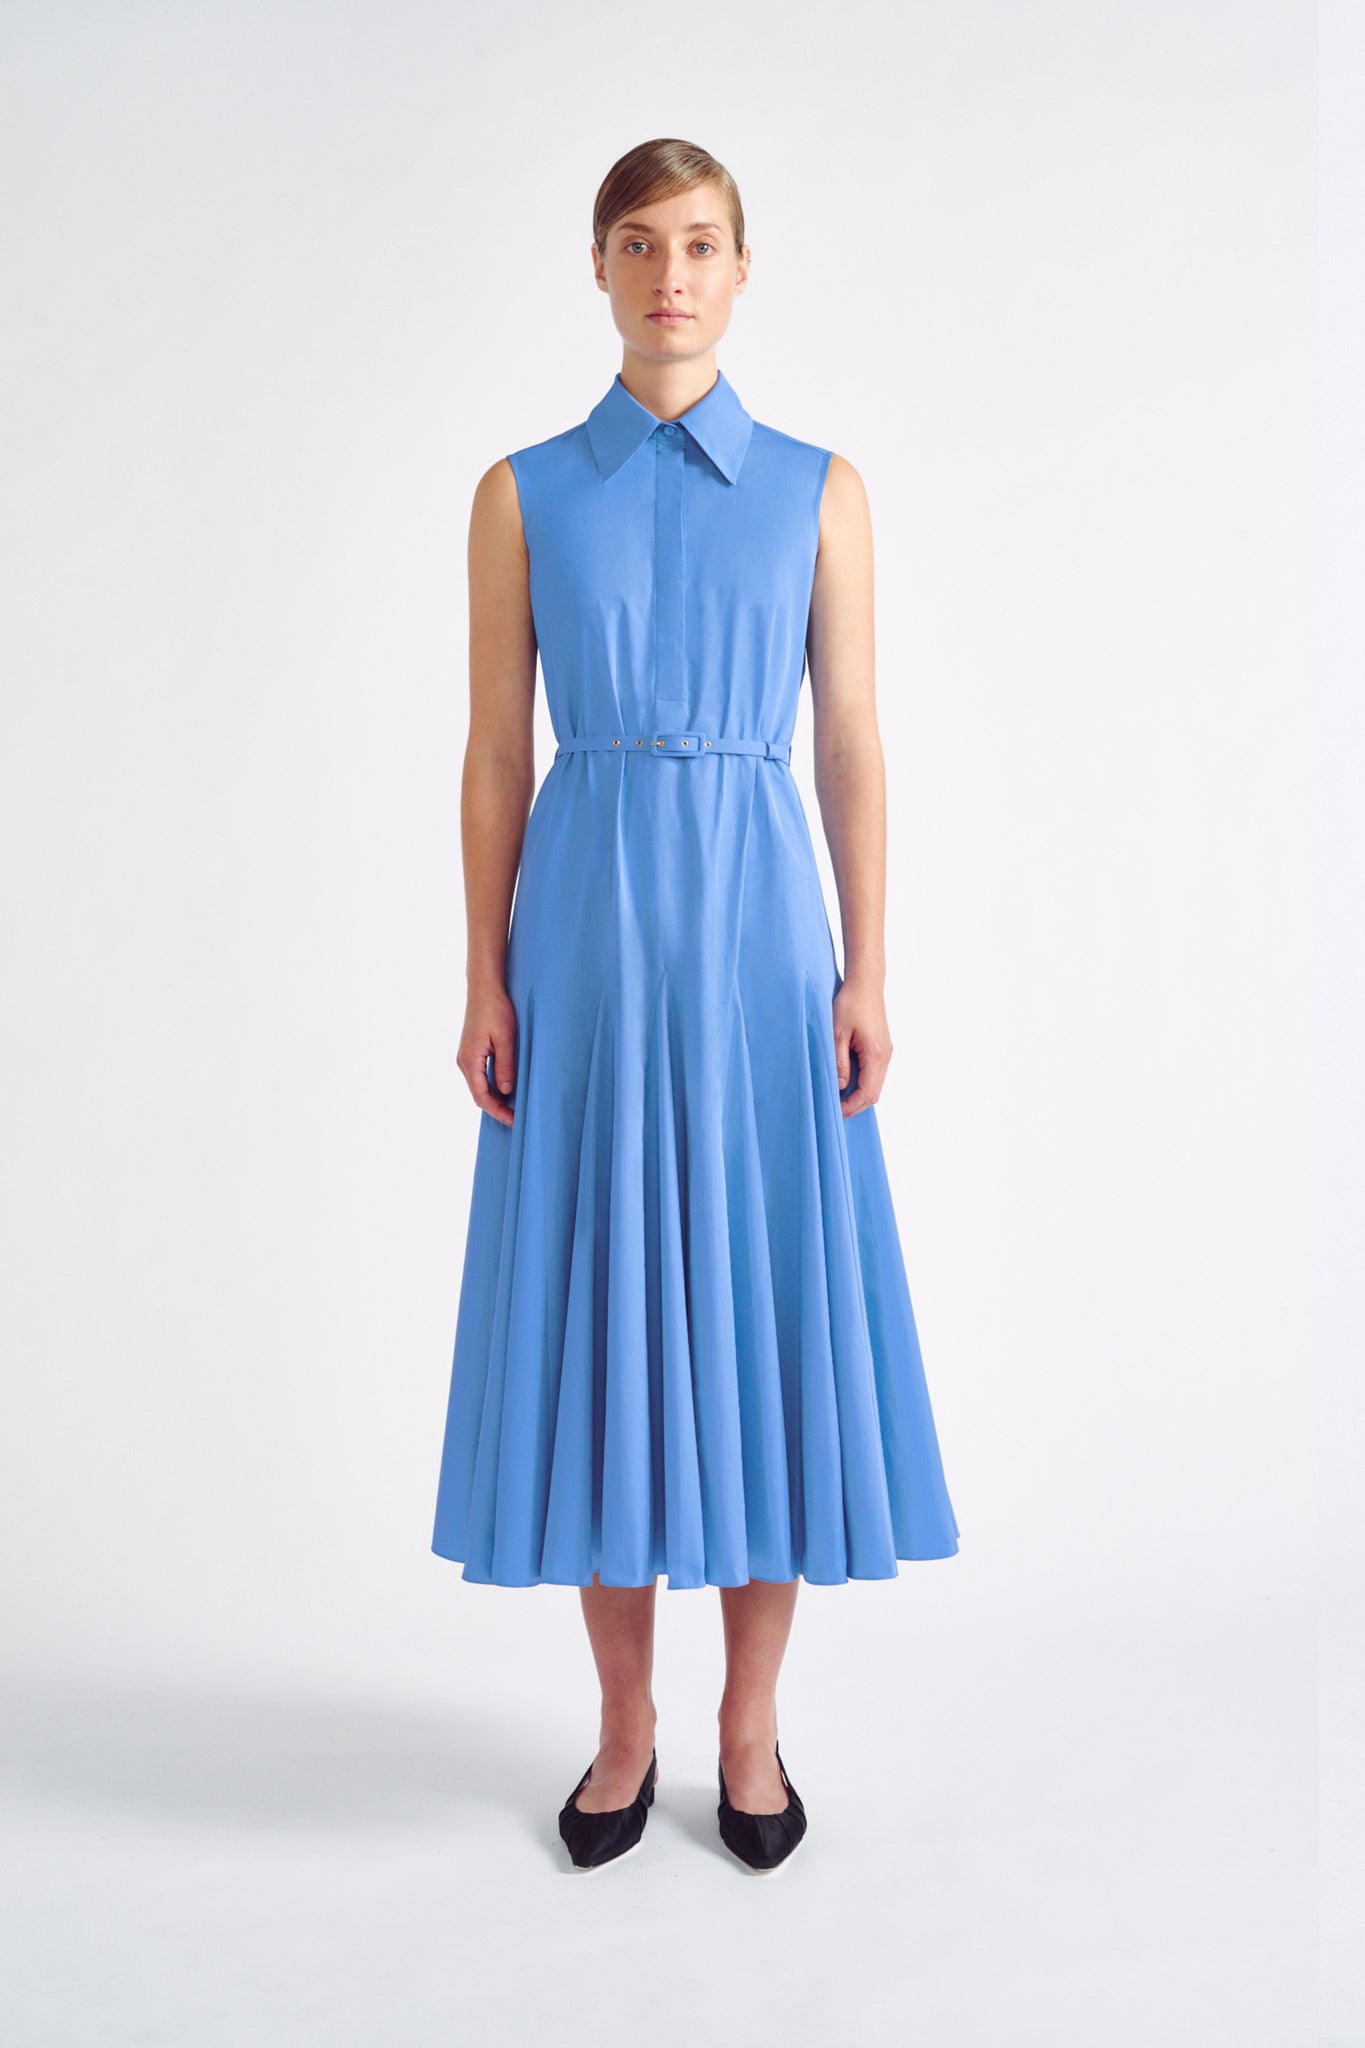 Monique Dress| Blue Cotton Sleeveless Shirt Dress | Emilia Wickstead